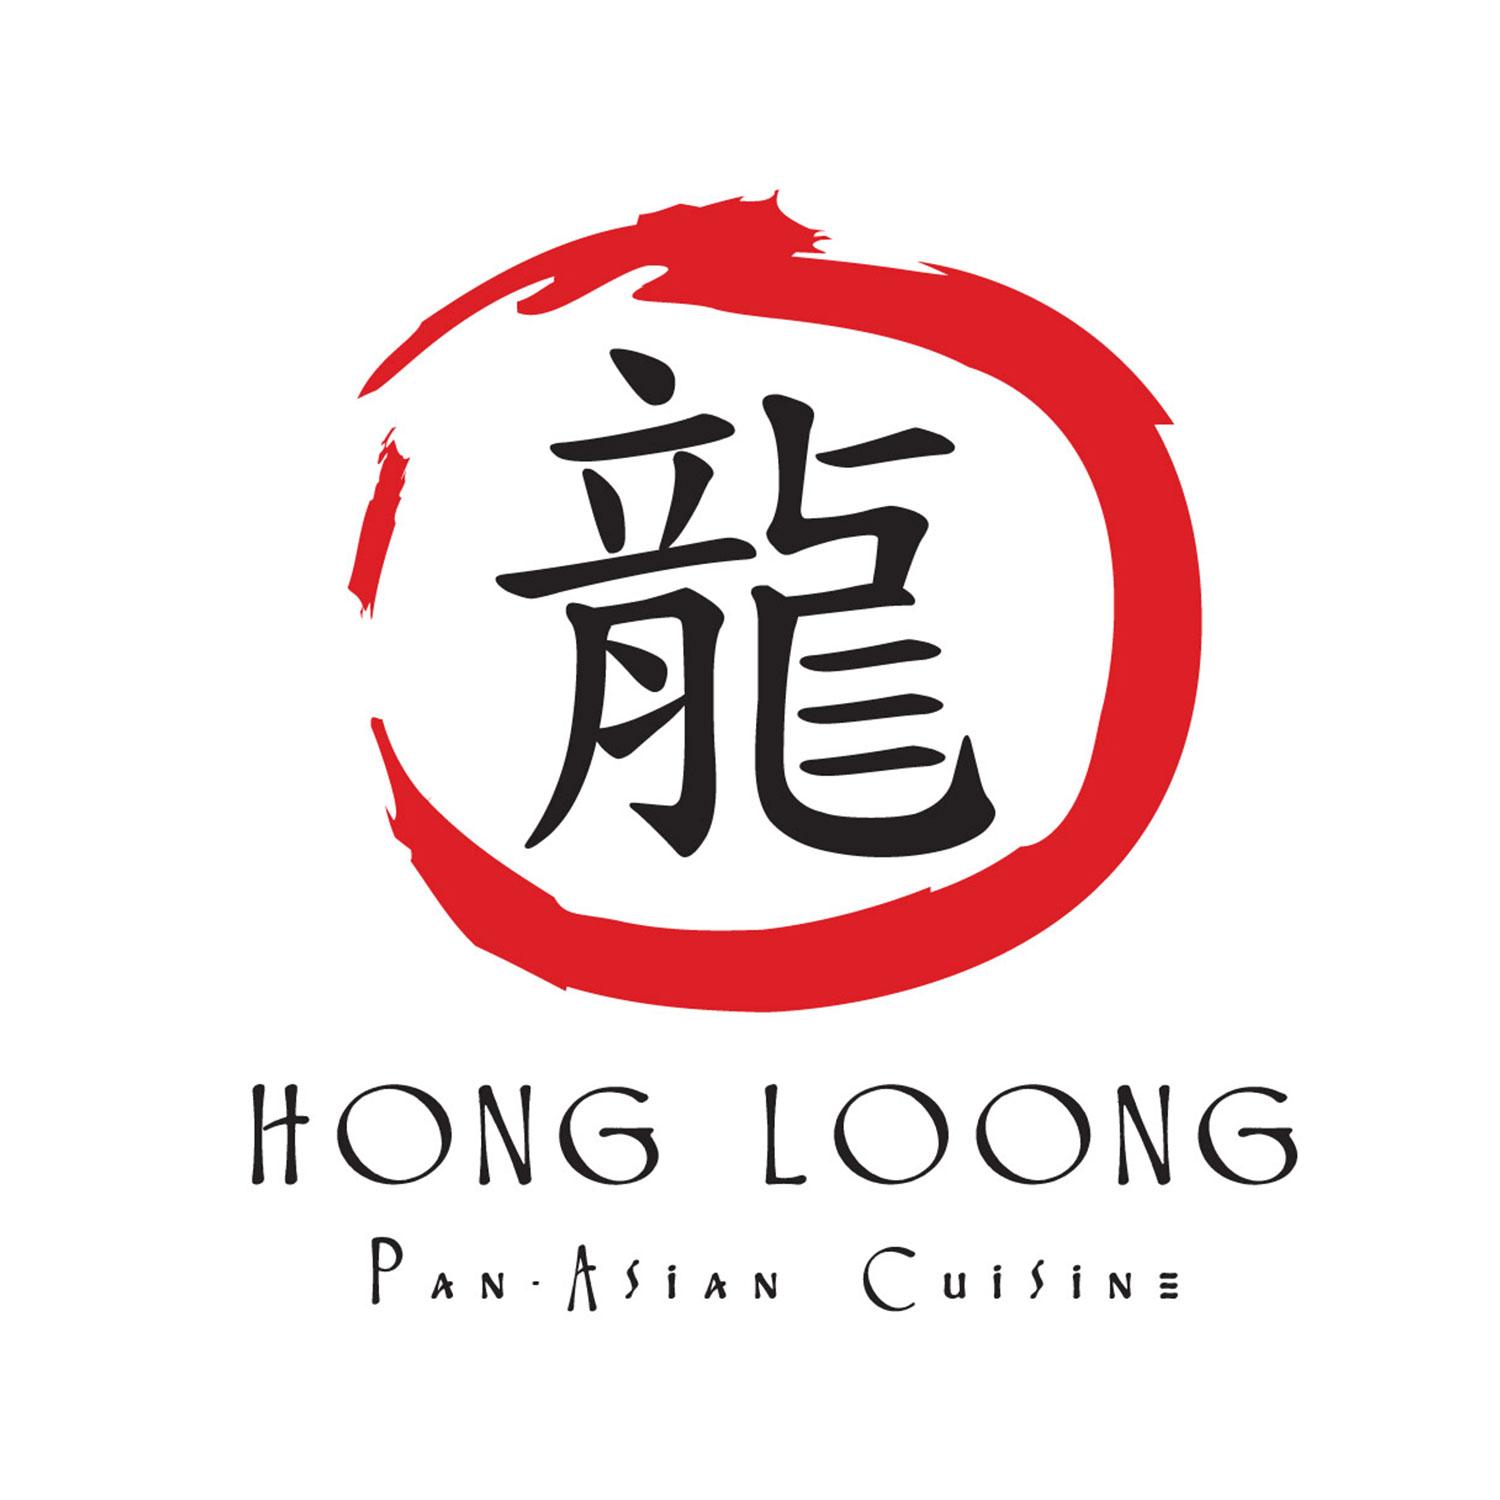 Hong Loong